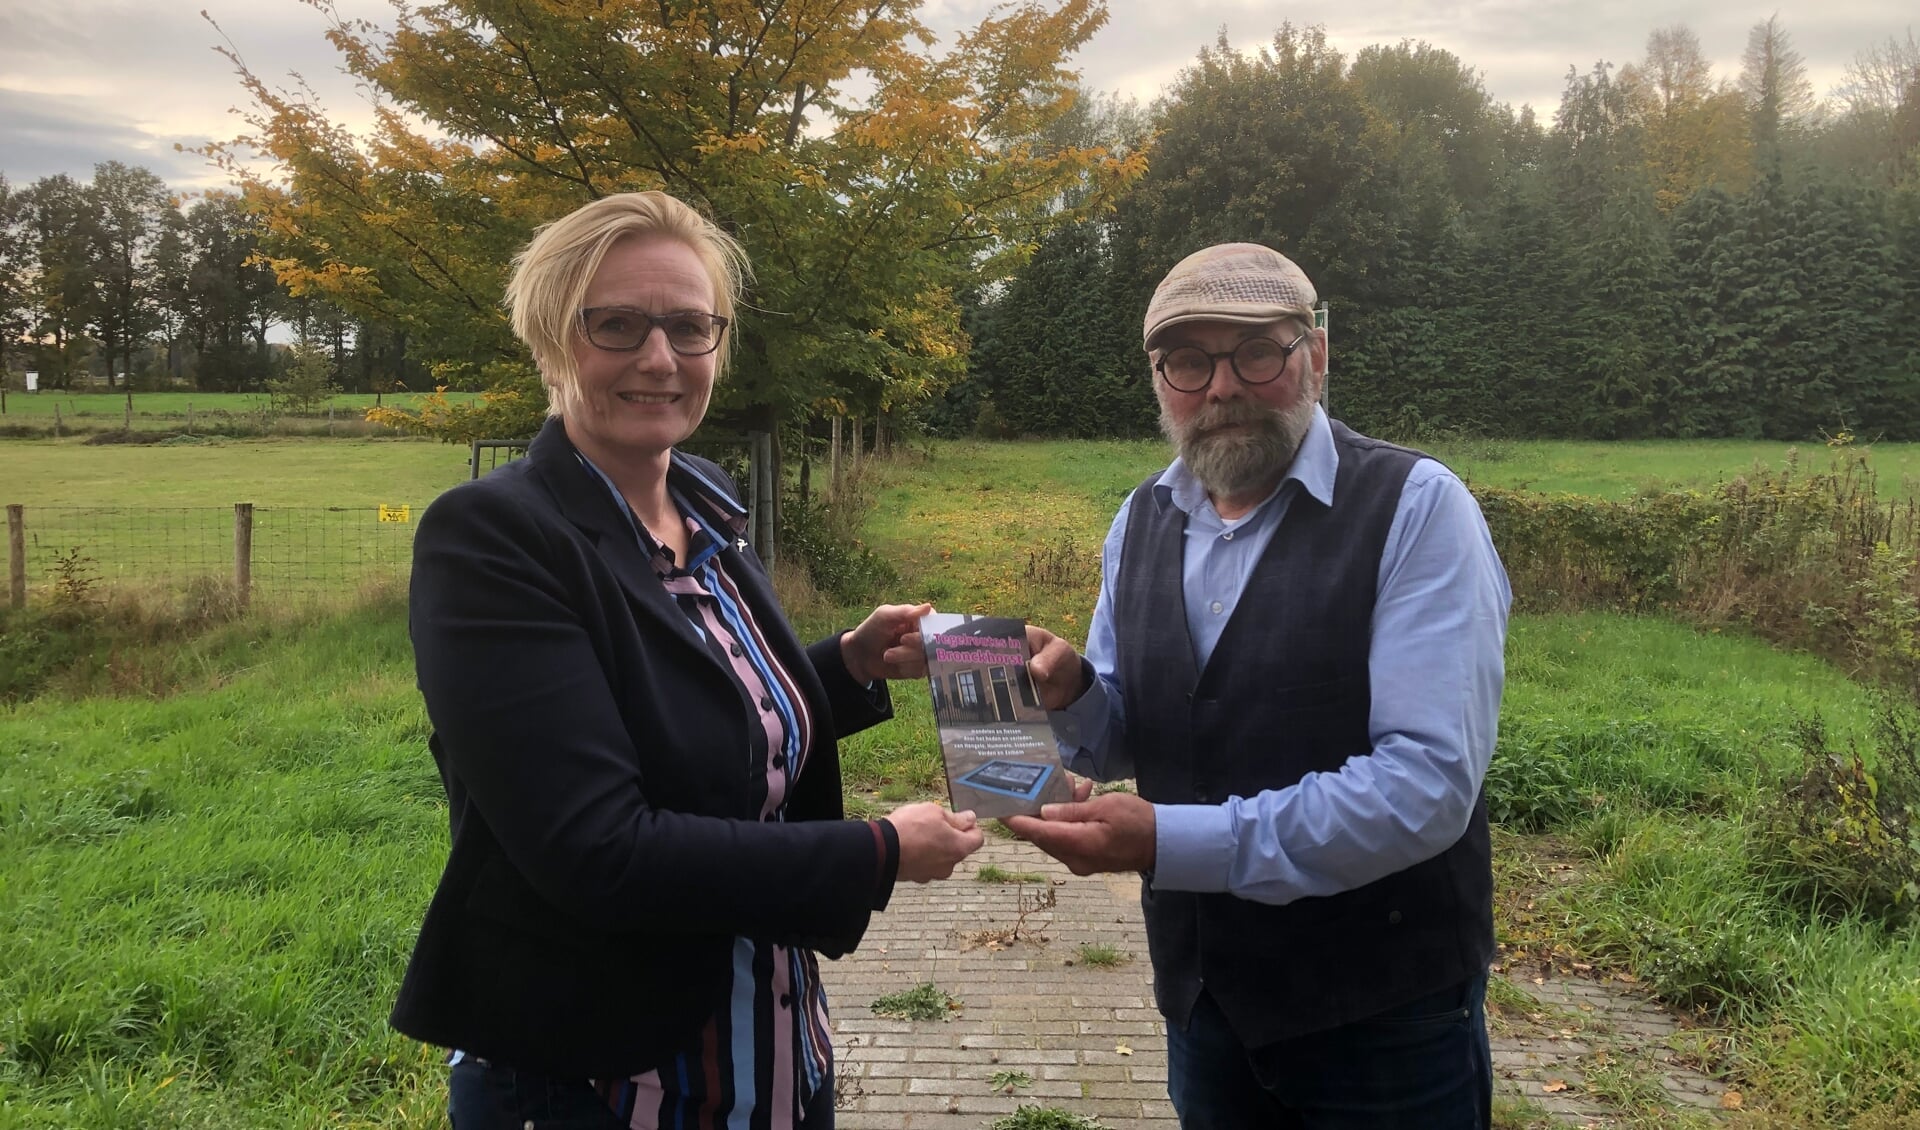 Harry Jansen overhandigde vorige week vrijdag burgemeester Marianne Besselink het eerste exemplaar van het Tegelboekje. Foto: PR